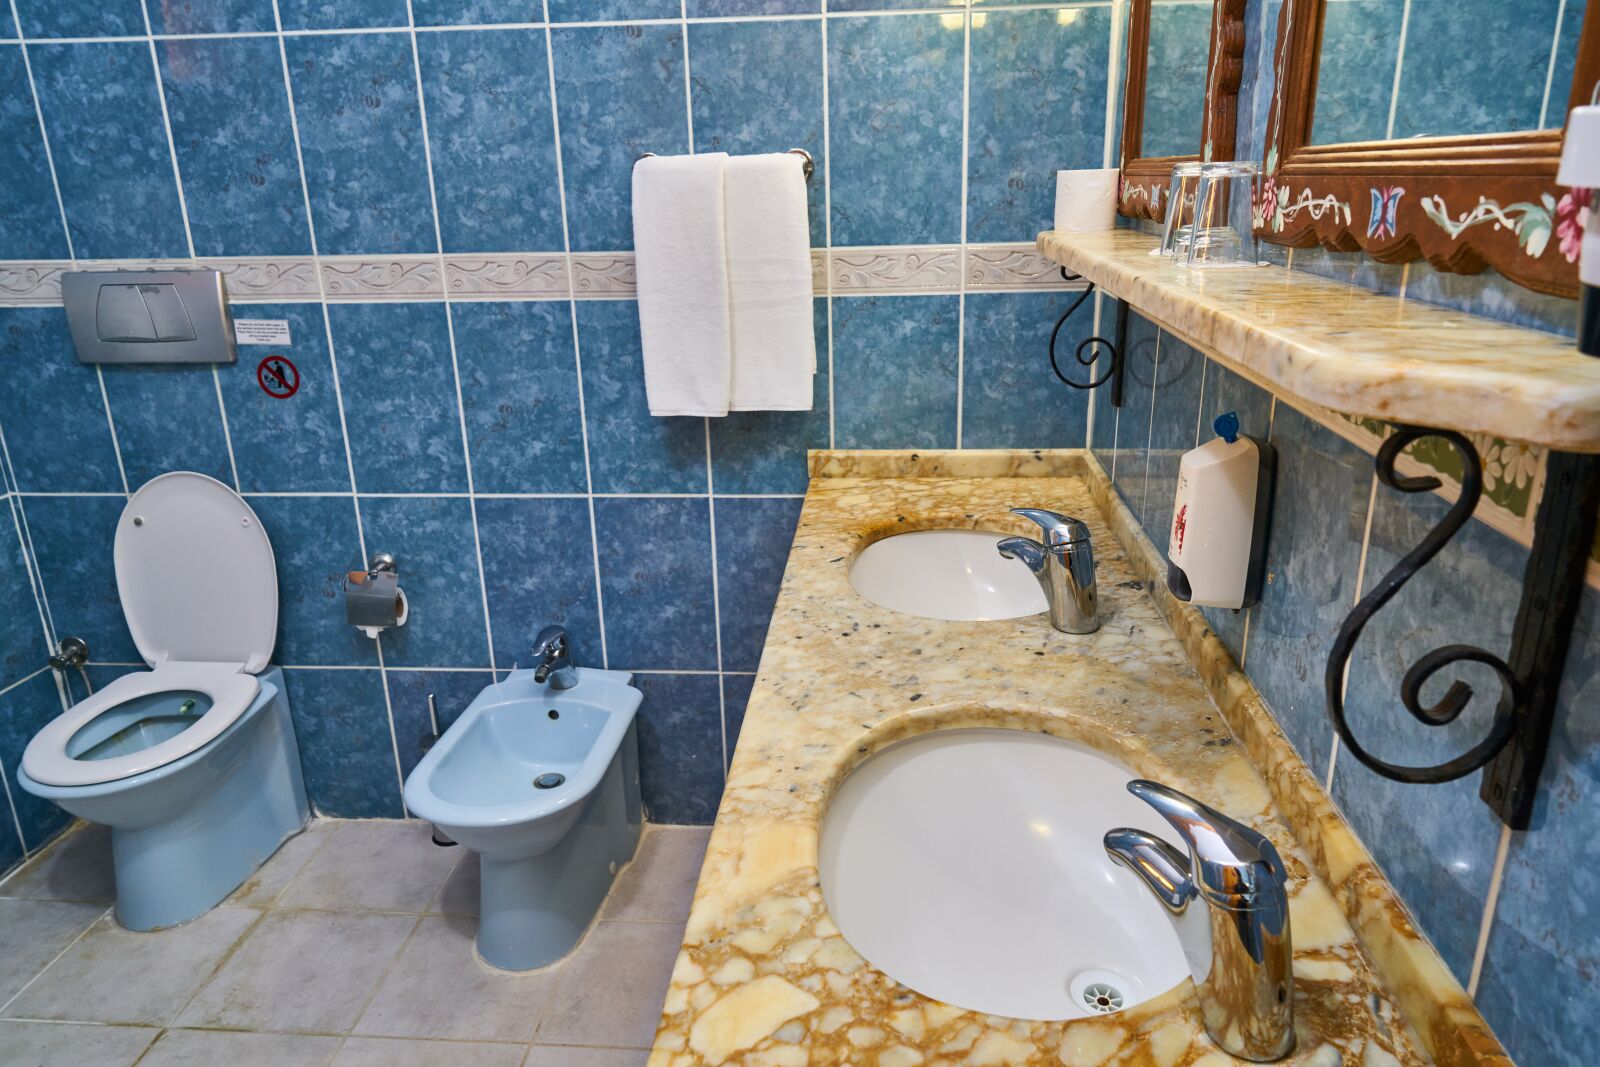 Sony a7R II sample photo. Bathroom, toilet, tiles photography